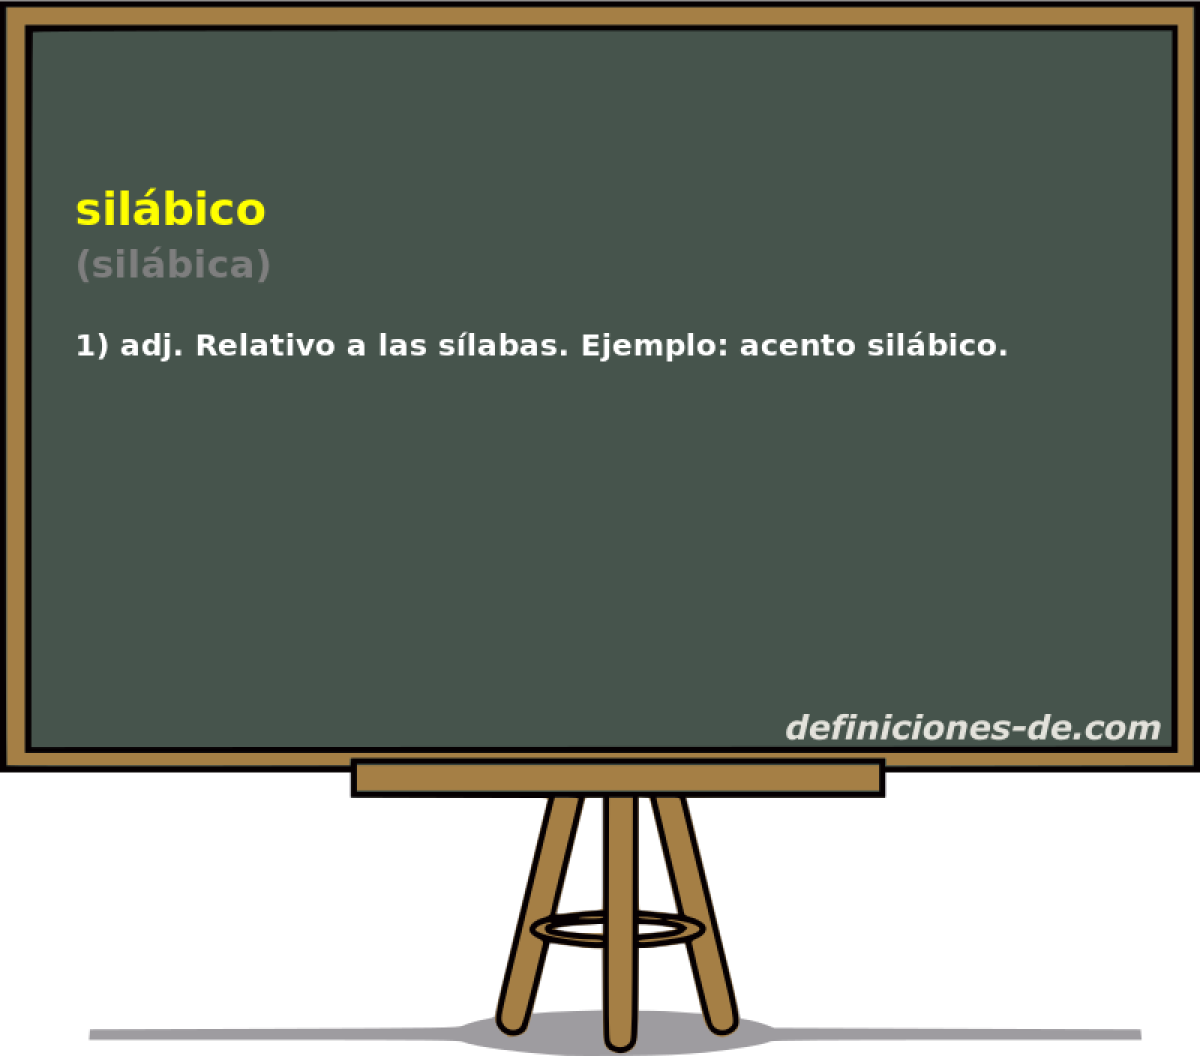 silbico (silbica)